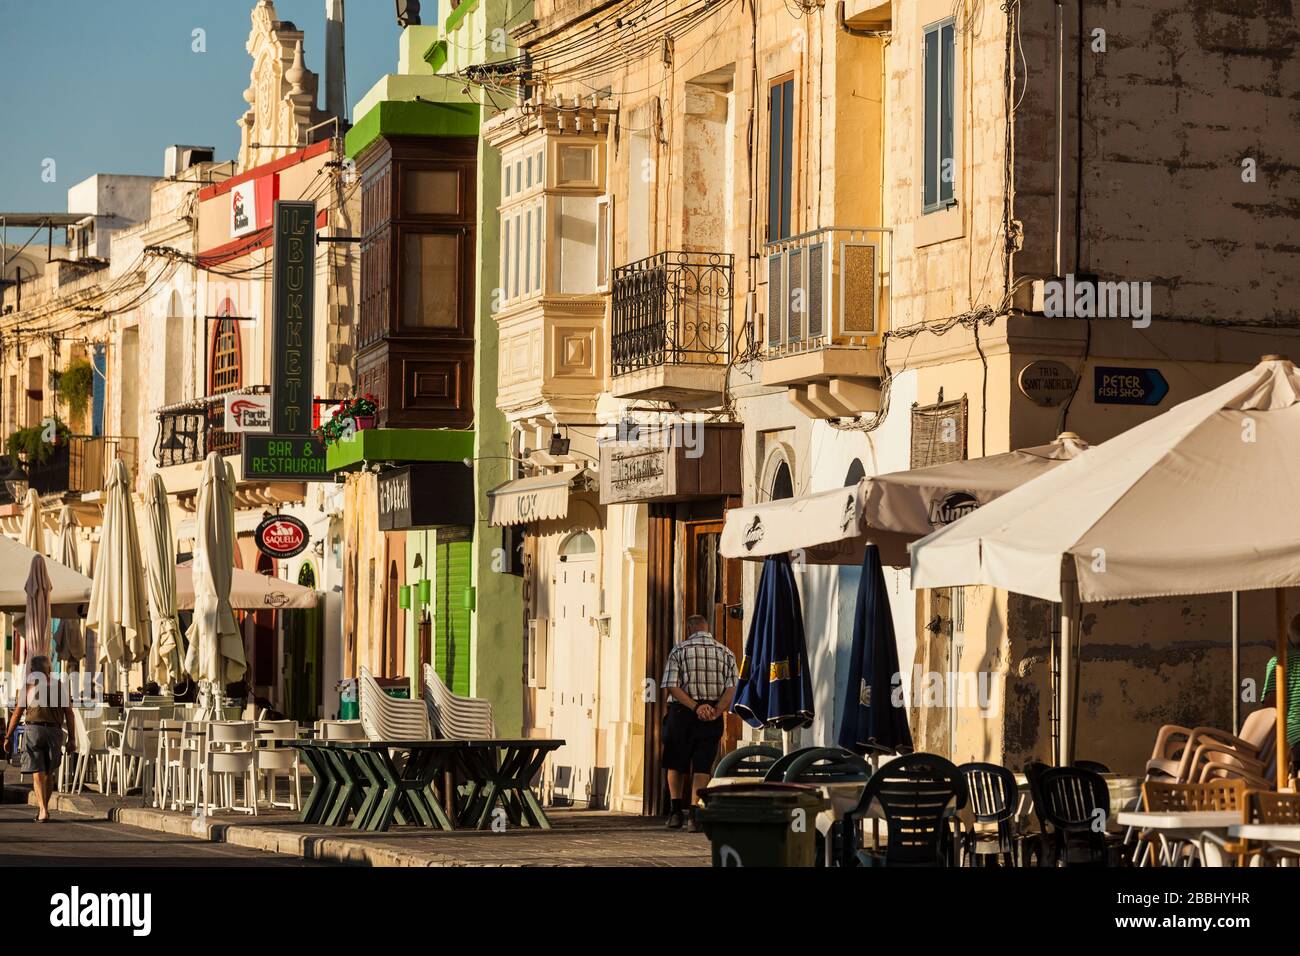 Malte, Marsaxlokk : le village est situé dans la partie sud-est de Malte, célèbre pour son grand marché aux poissons du dimanche et ses nombreuses décorations Banque D'Images